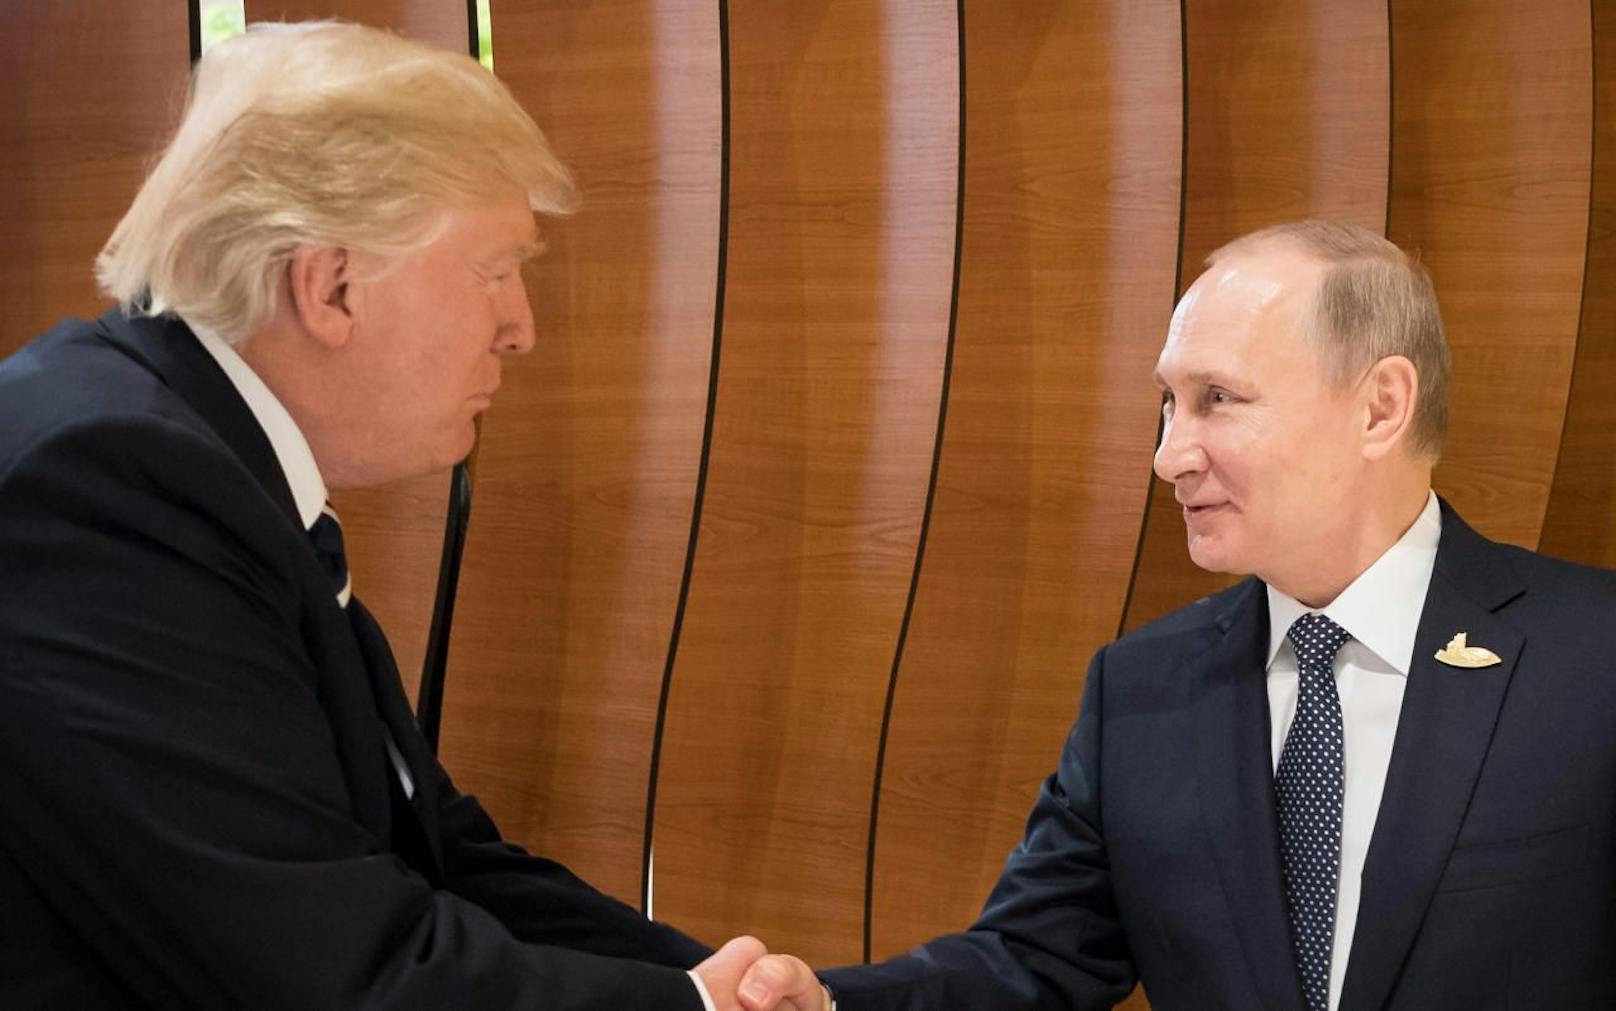 Beim G20-Gipfel in Hamburg trafen sich Donald Trump und Wladimir Putin zum ersten Mal. Daneben trafen sie sich aber ein zweites Mal heimlich, wie jetzt enthüllt wurde. 